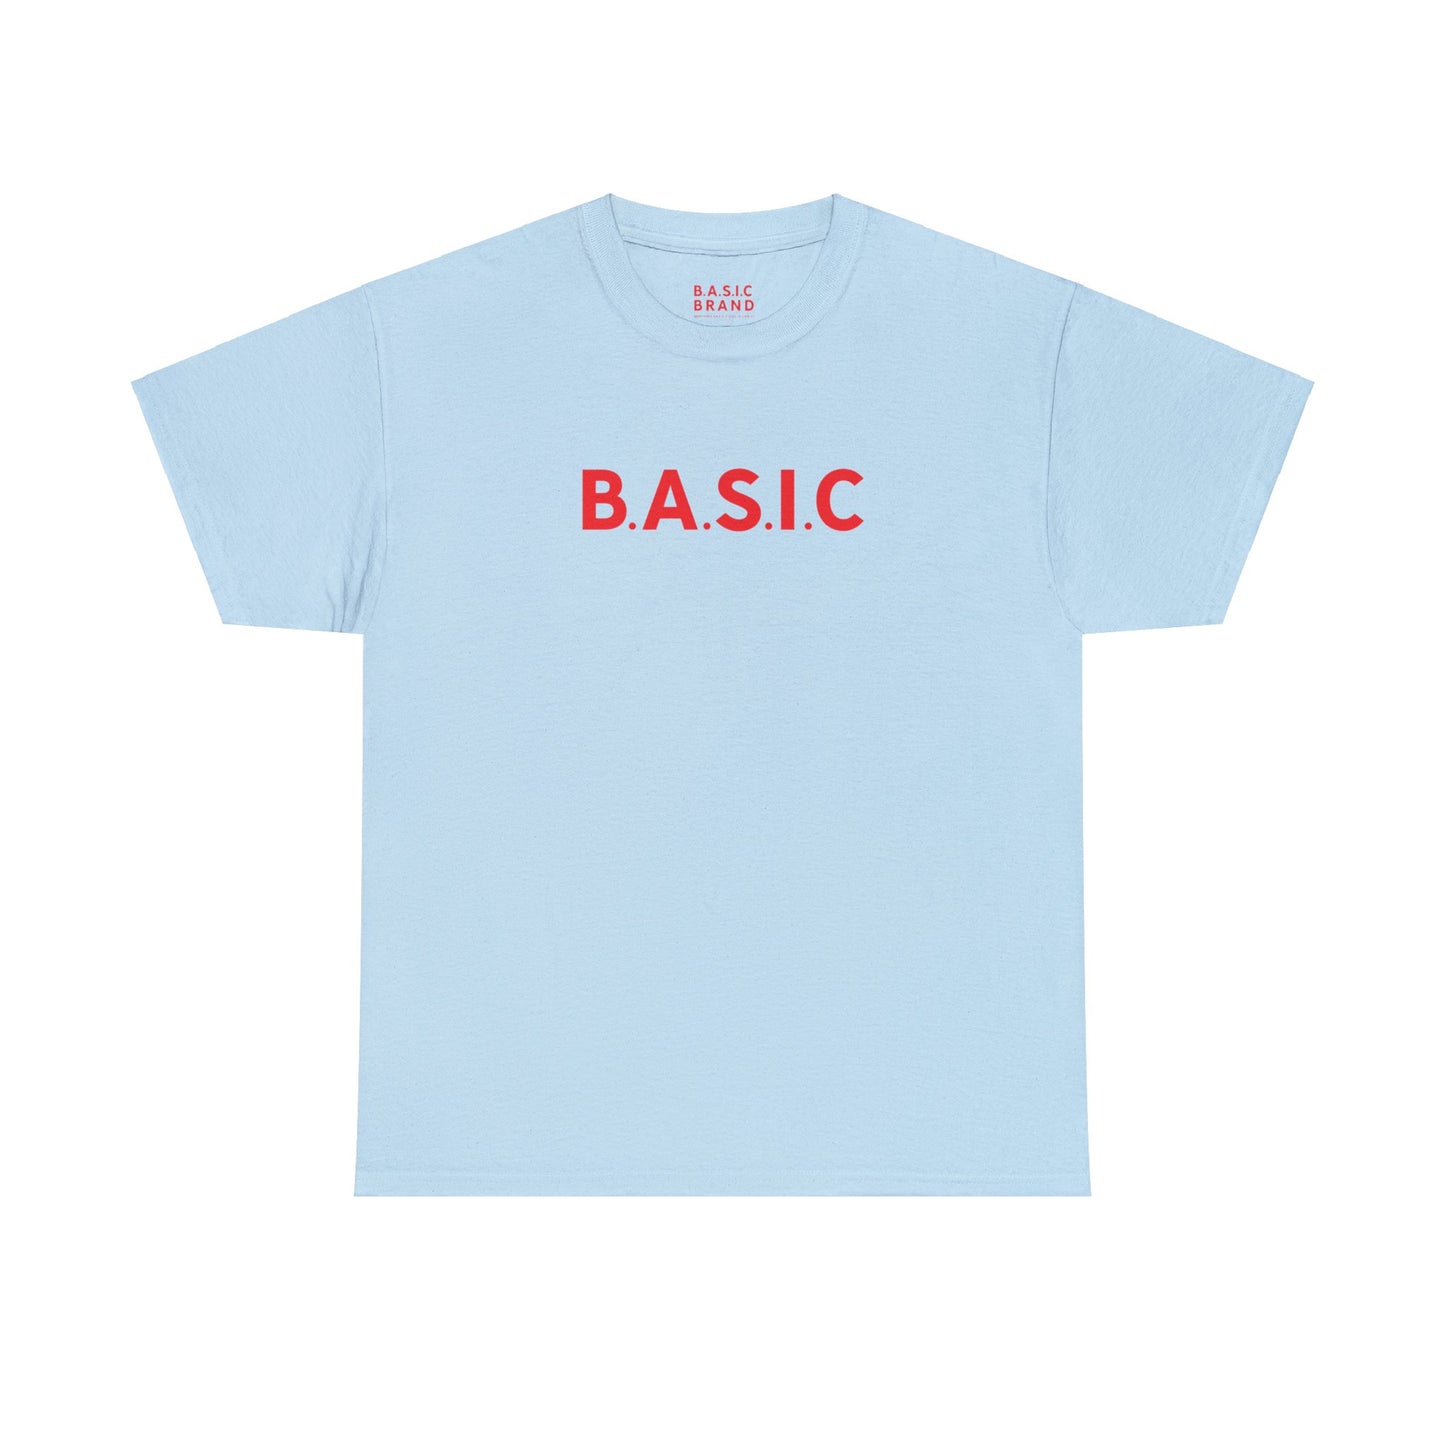 Men's B.A.S.I.C "Medium Sized Logo" Red Font Tee Shirt